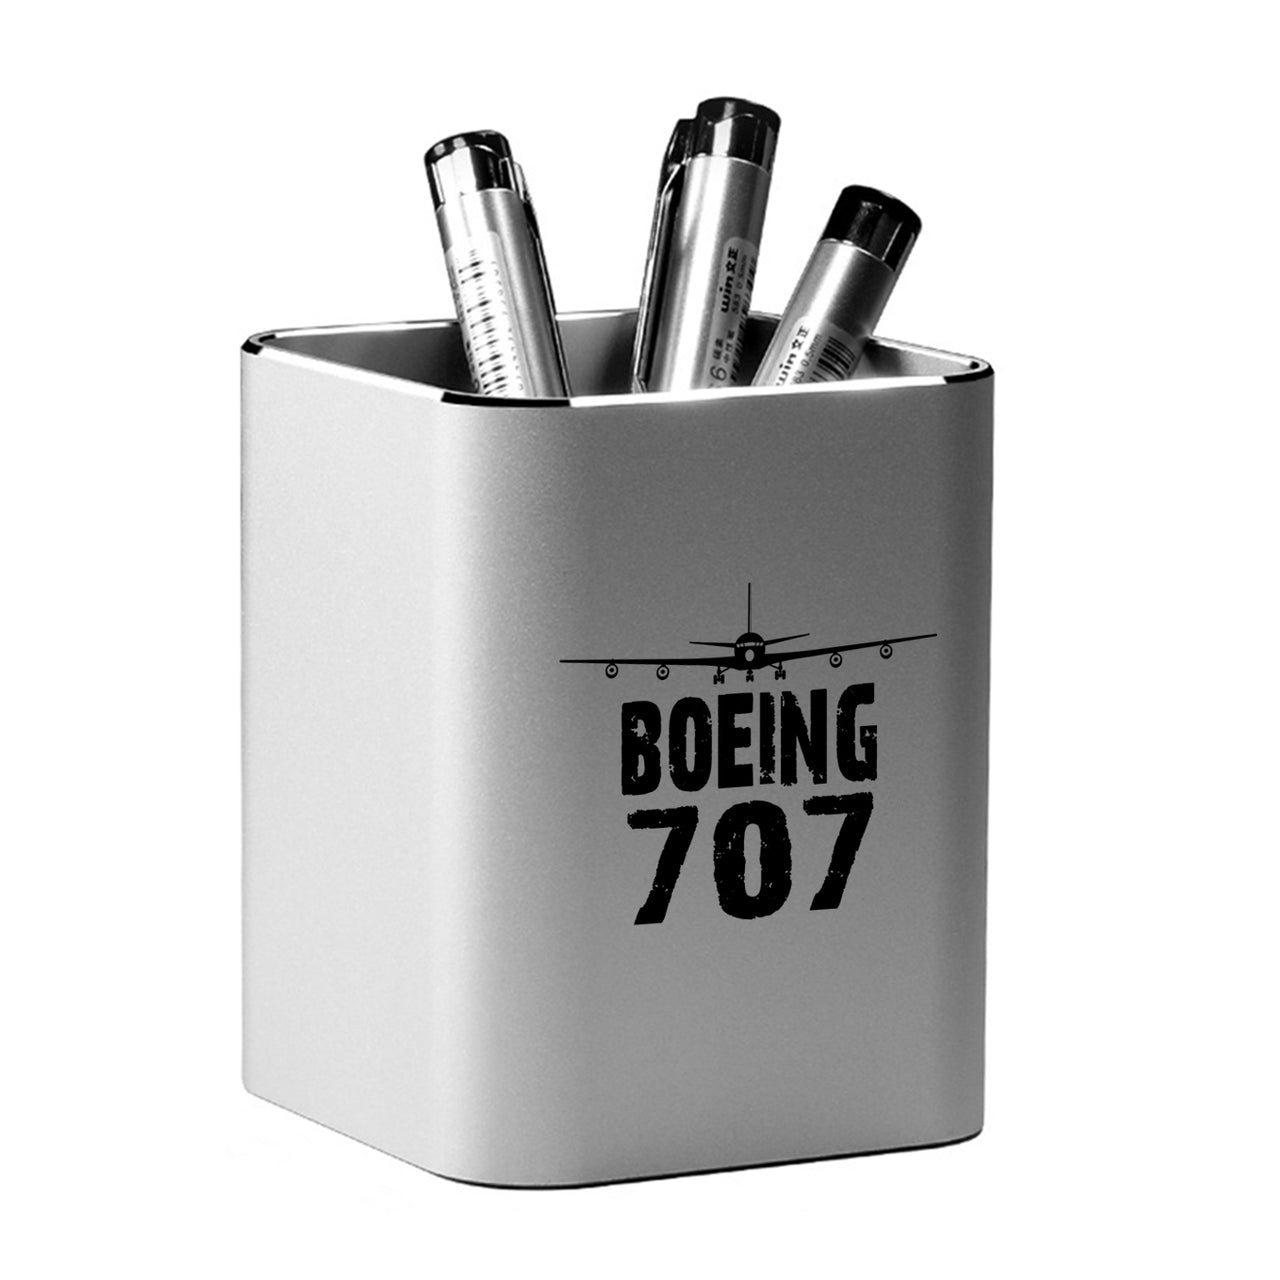 Boeing 707 & Plane Designed Aluminium Alloy Pen Holders